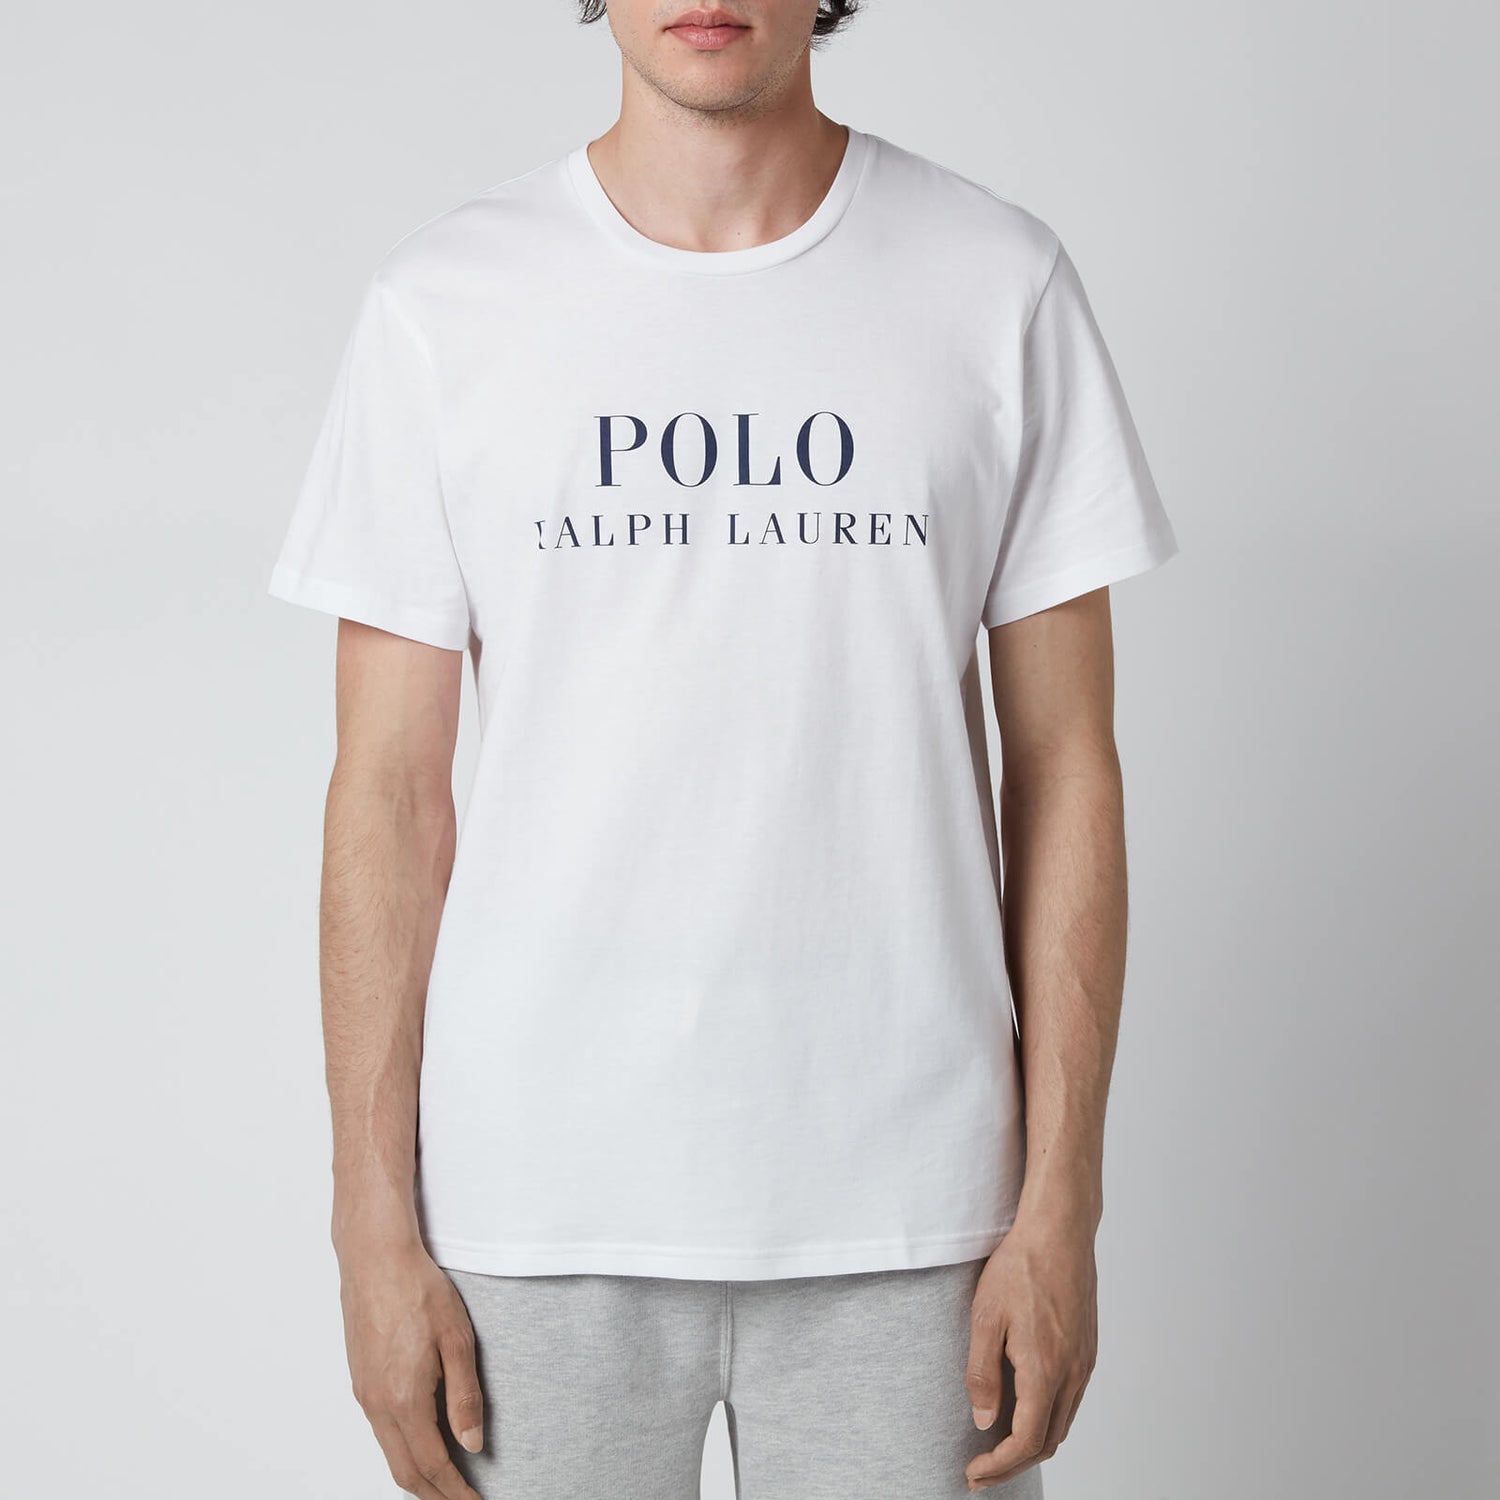 Polo Ralph Lauren Men's Liquid Cotton Crewneck T-Shirt - White - S